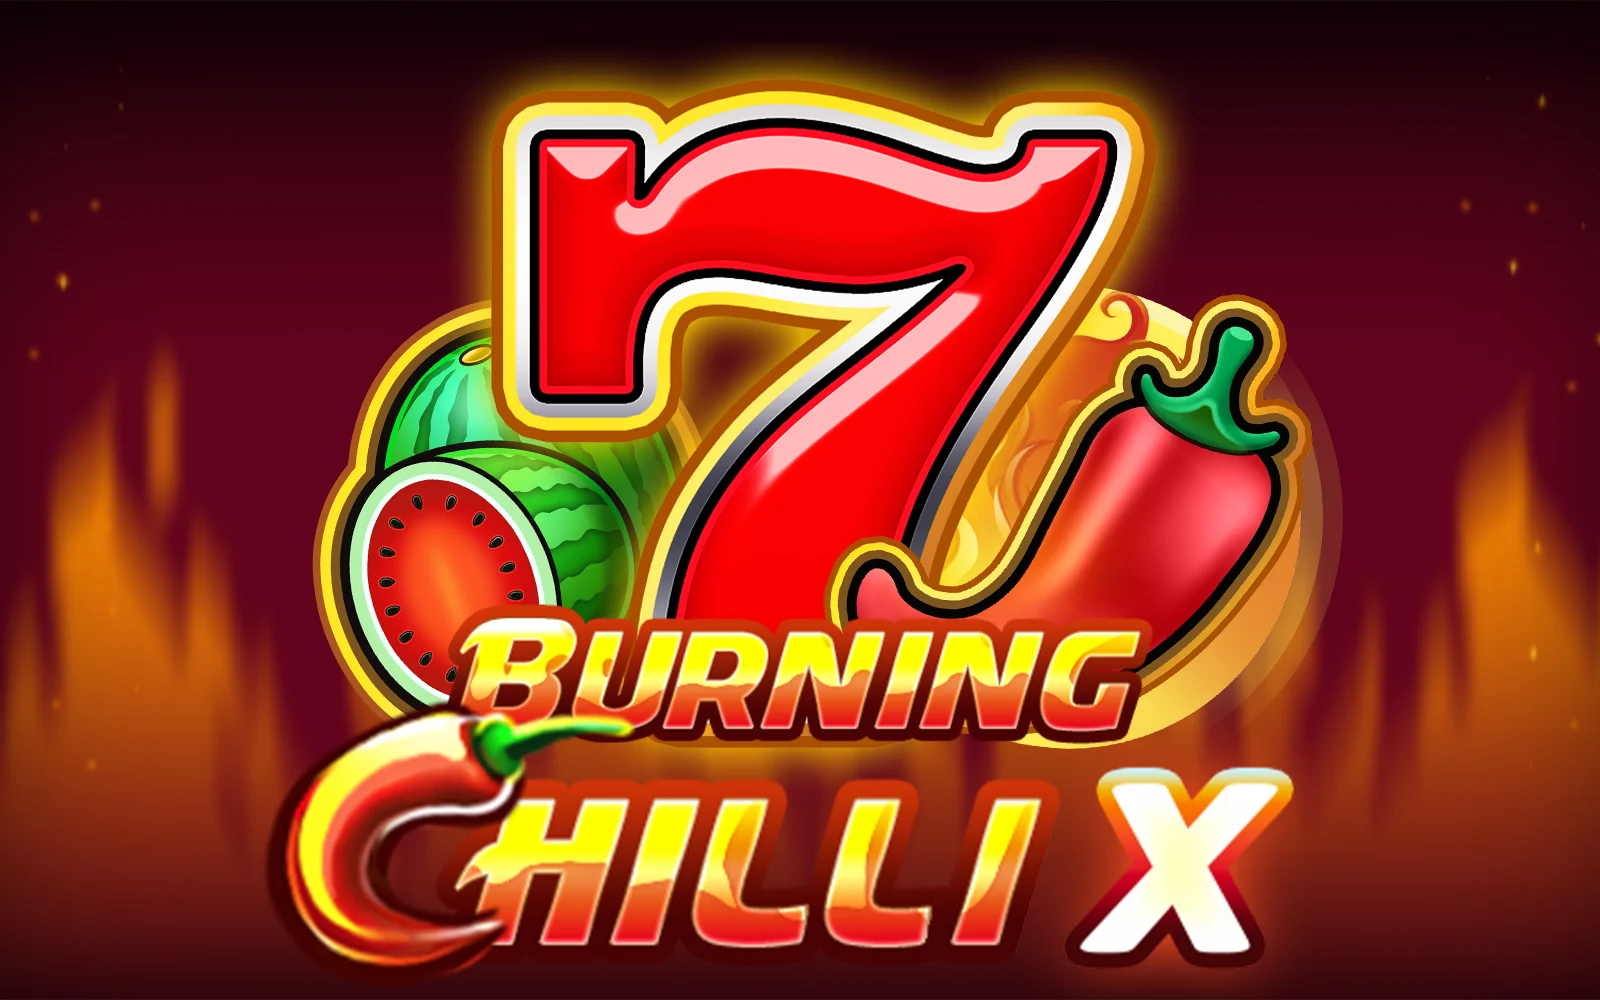 Play Burning Chilli X on Starcasino.be online casino